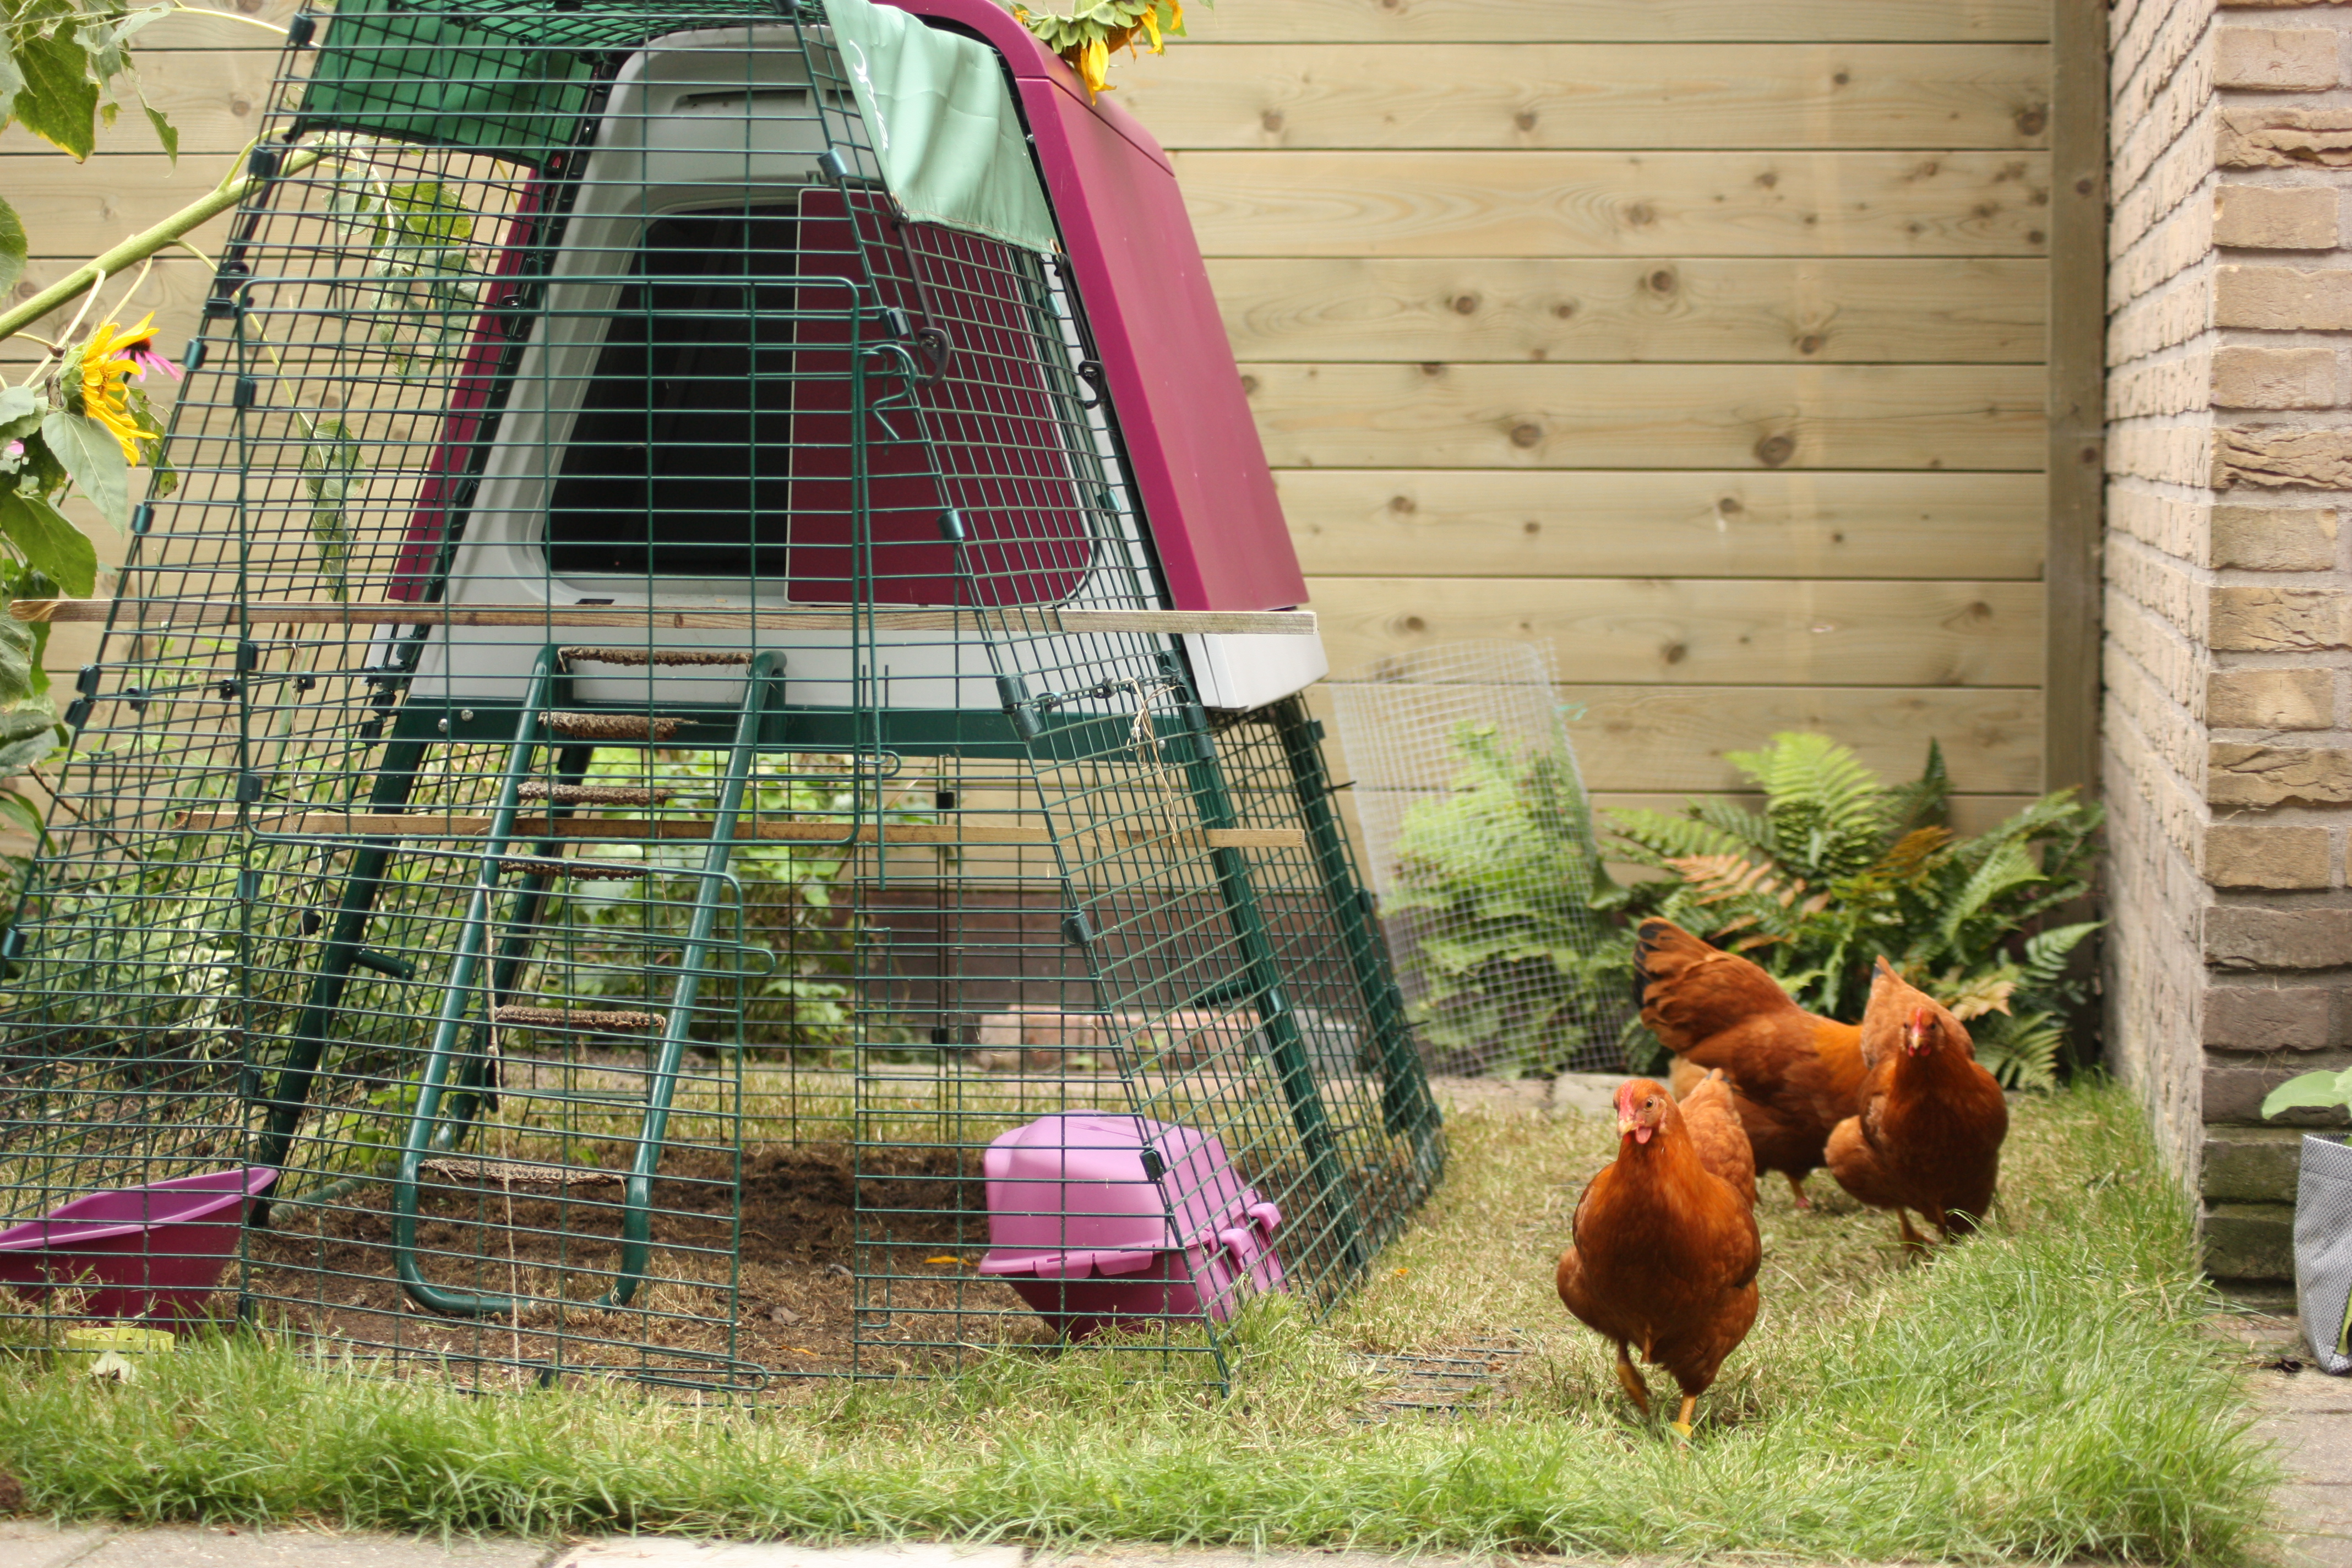 Les poules de Pauline Snel adorent se promener librement dans son jardin